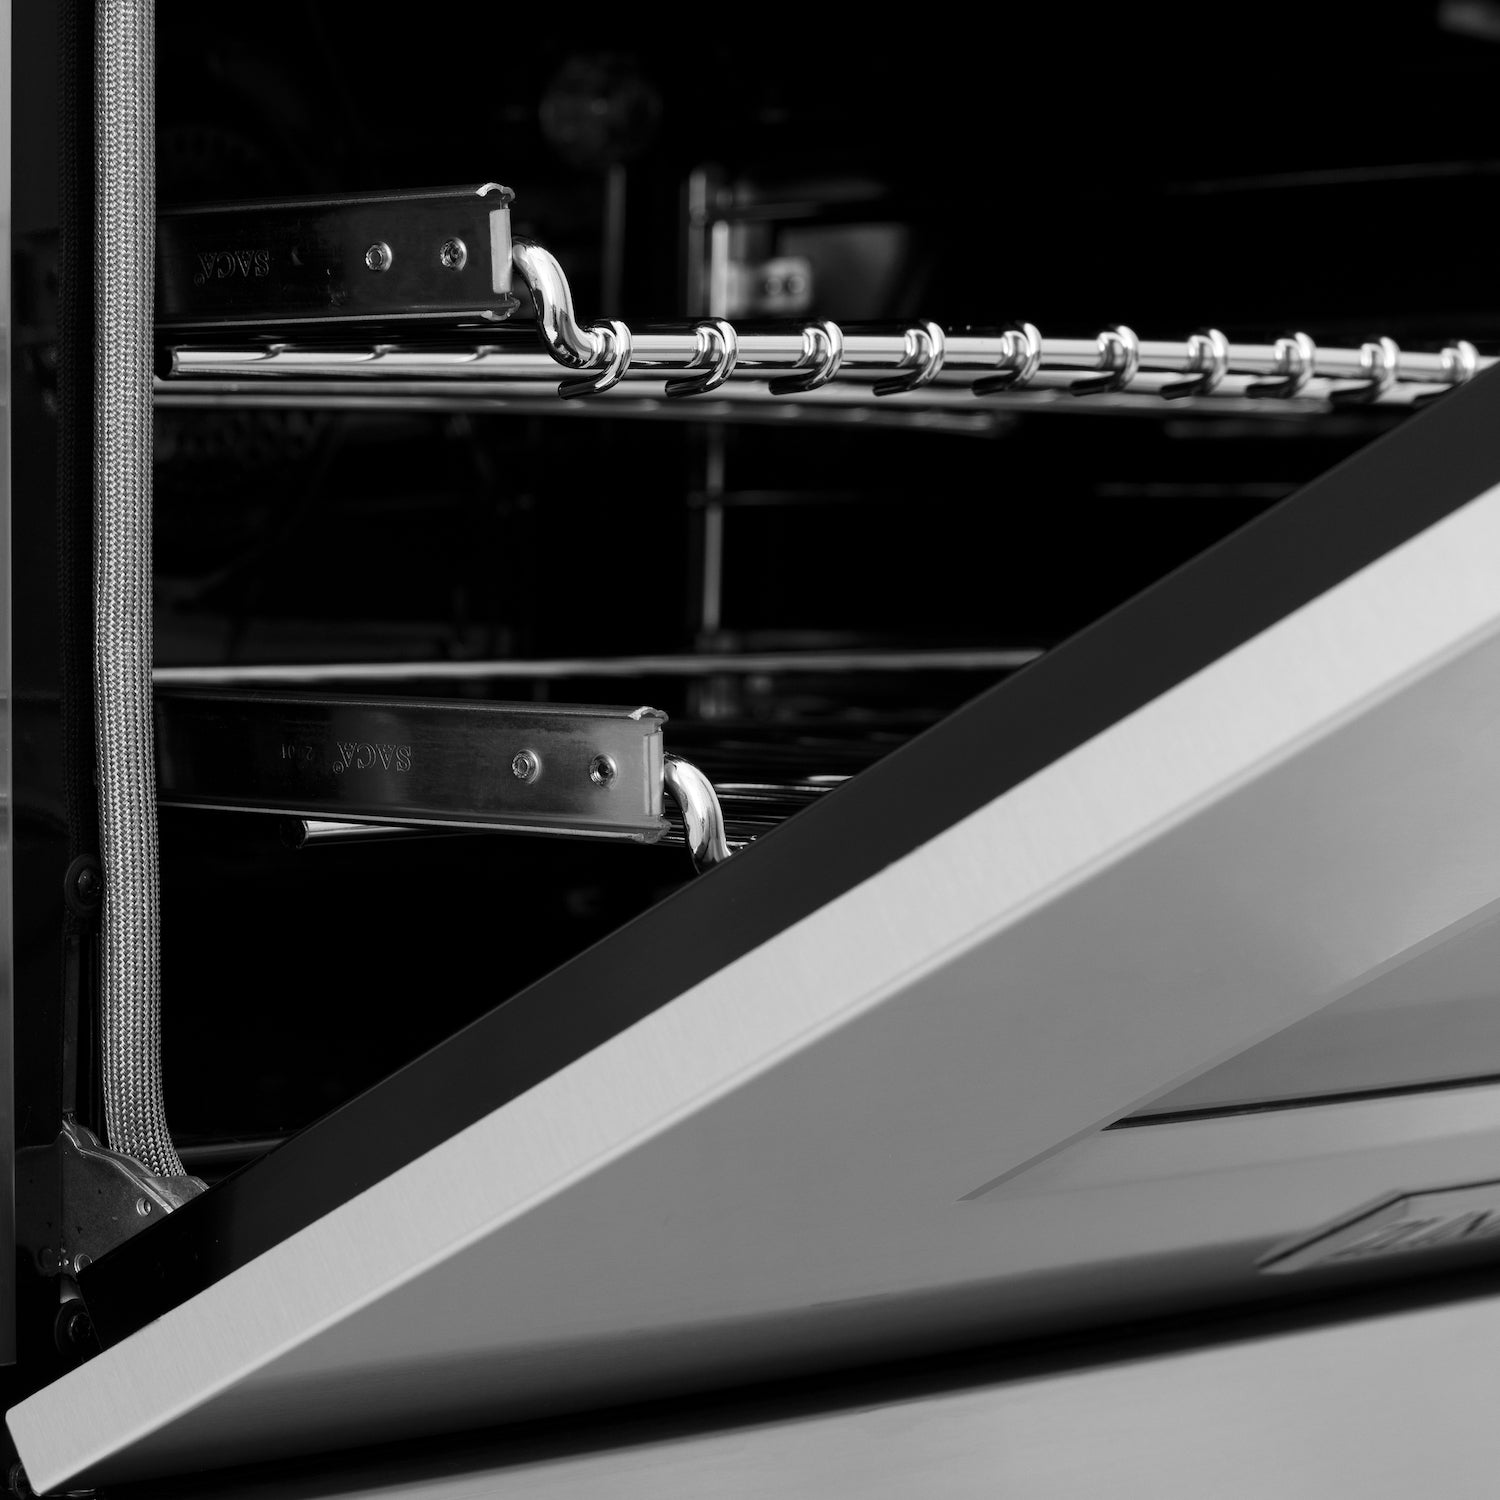 ZLINE 48 in. Professional Dual Fuel Range in Stainless Steel (RA48) oven door close-up.